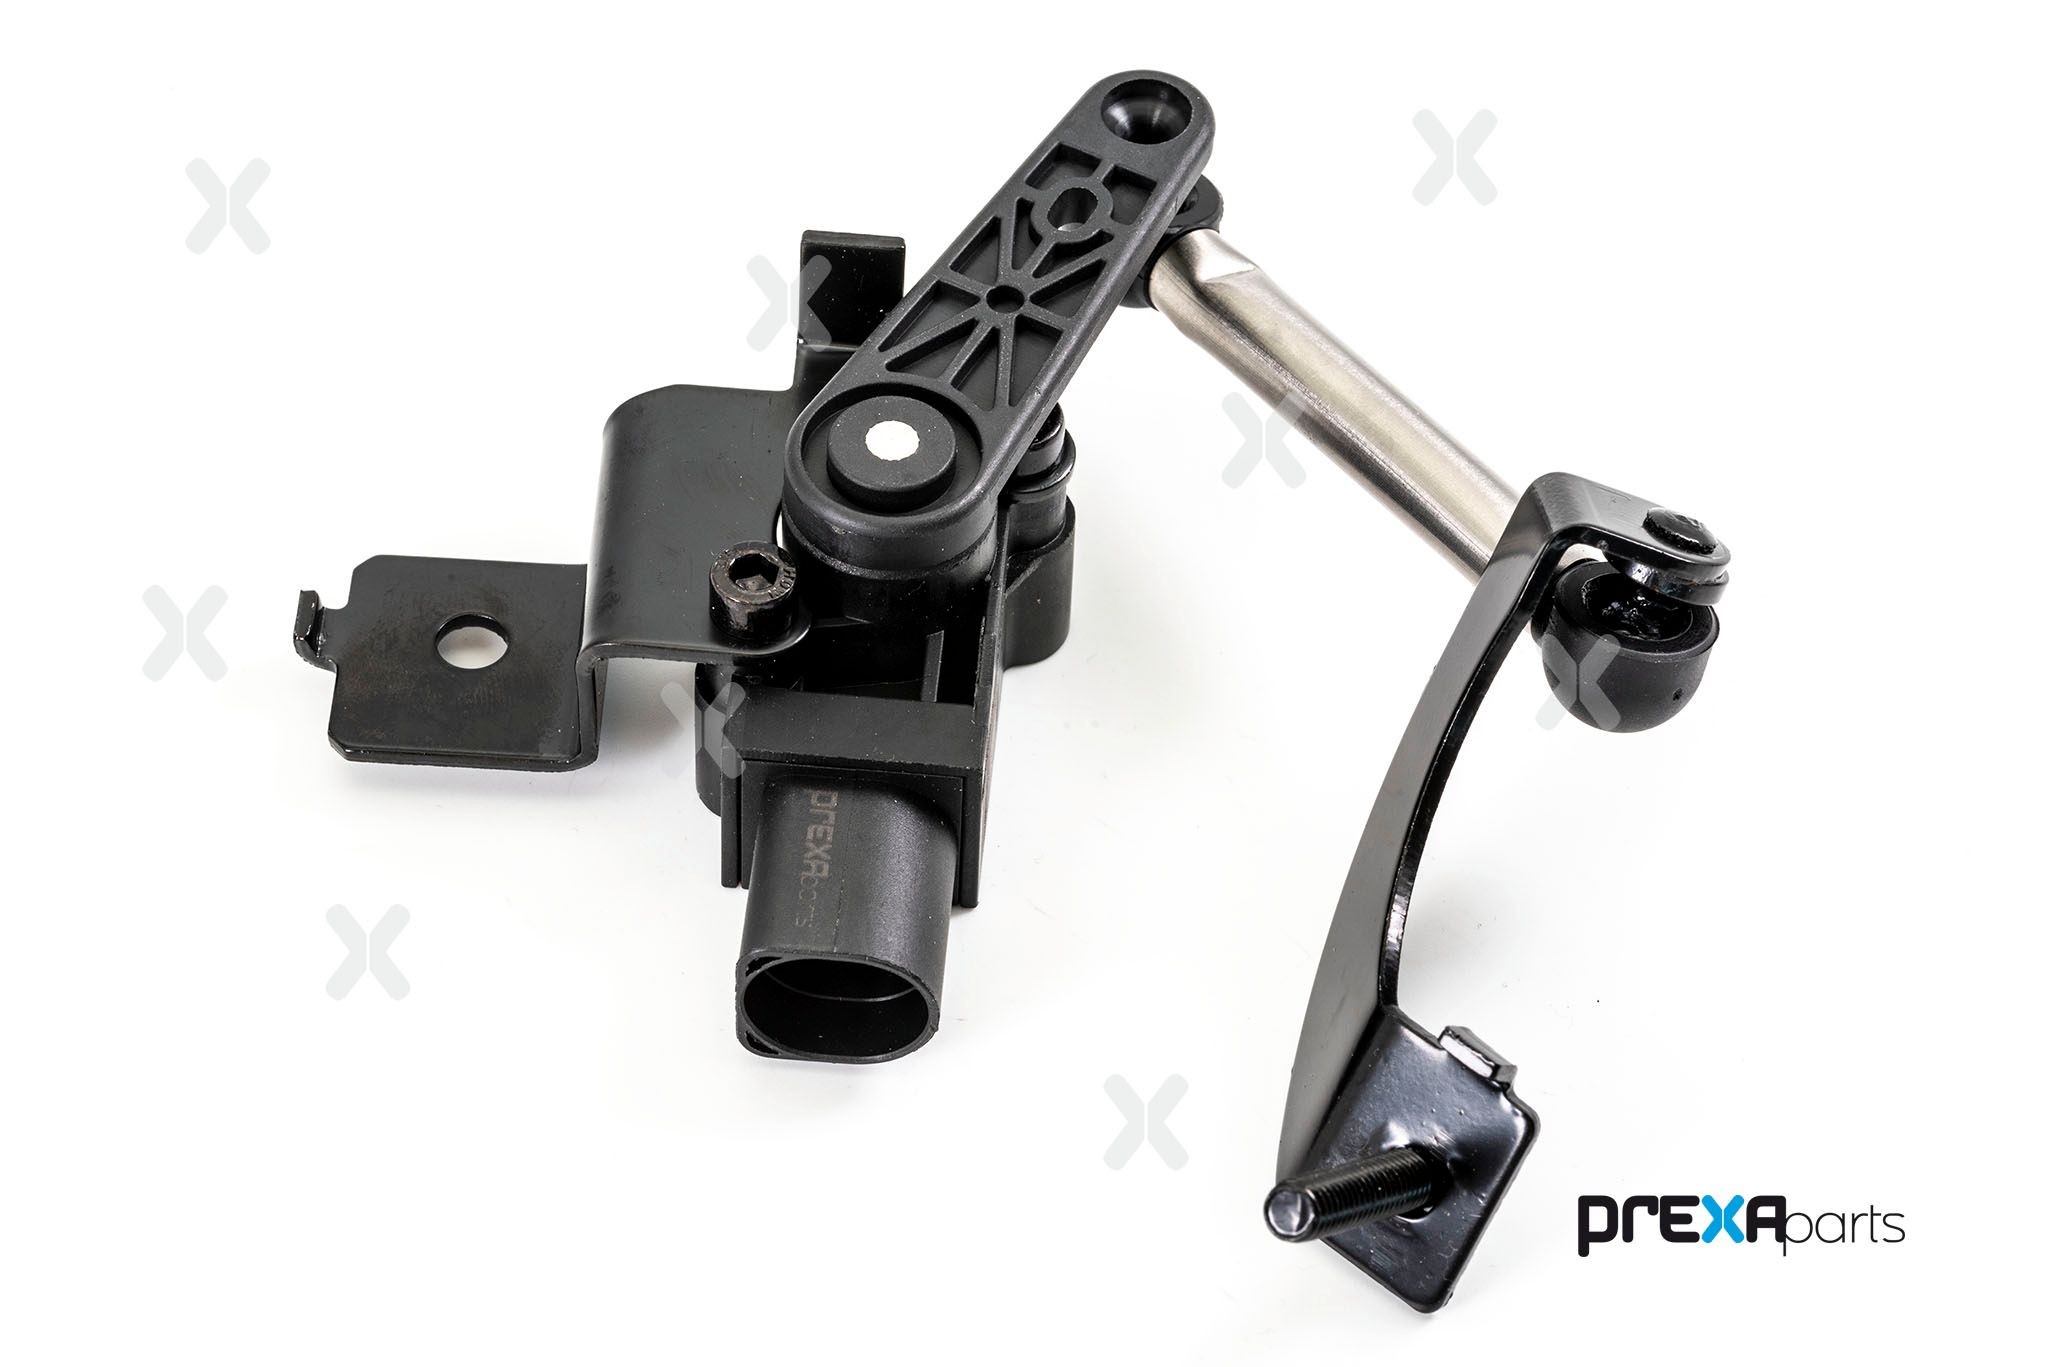 PREXAparts P103139 Sensore, luce xenon (dispositivo correttore assetto fari) Peugeot 3008 di qualità originale